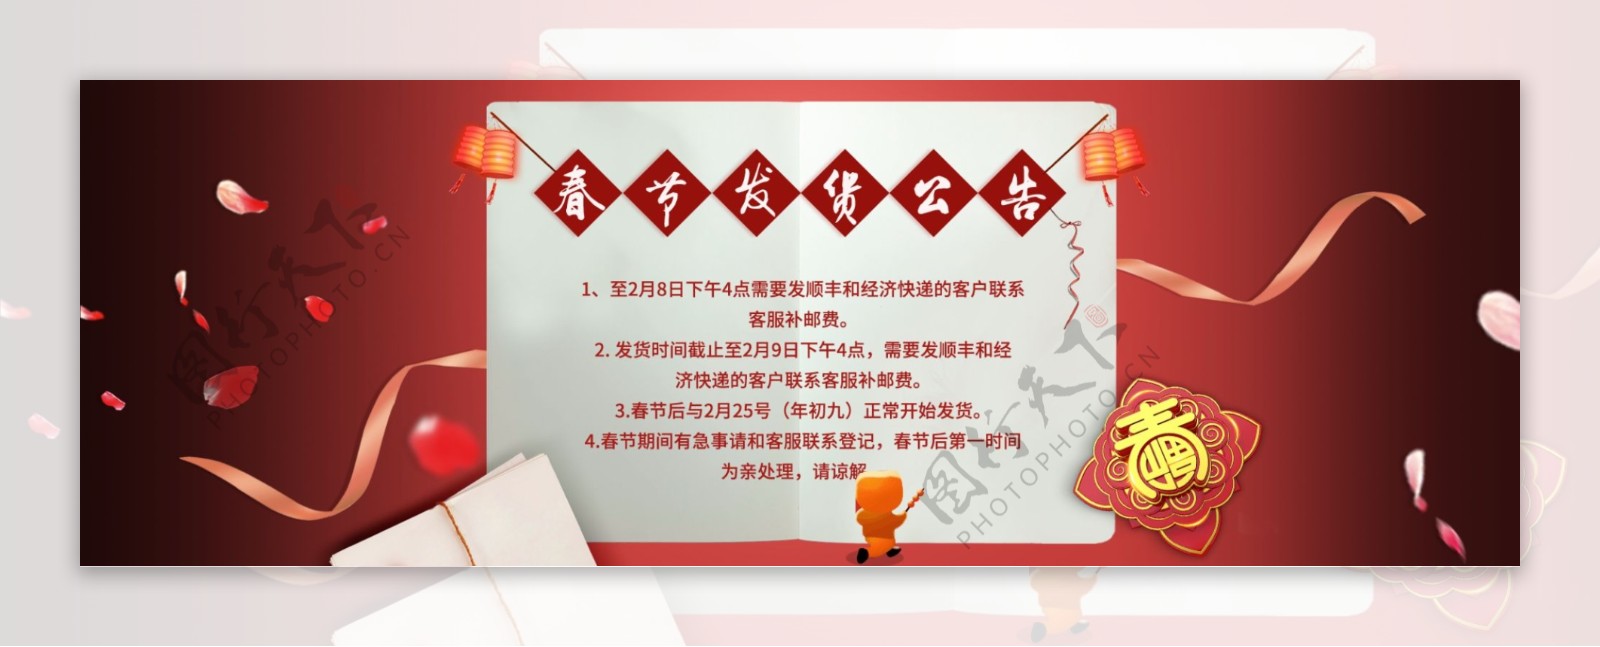 淘宝天猫春节放假通知公告海报设计模板